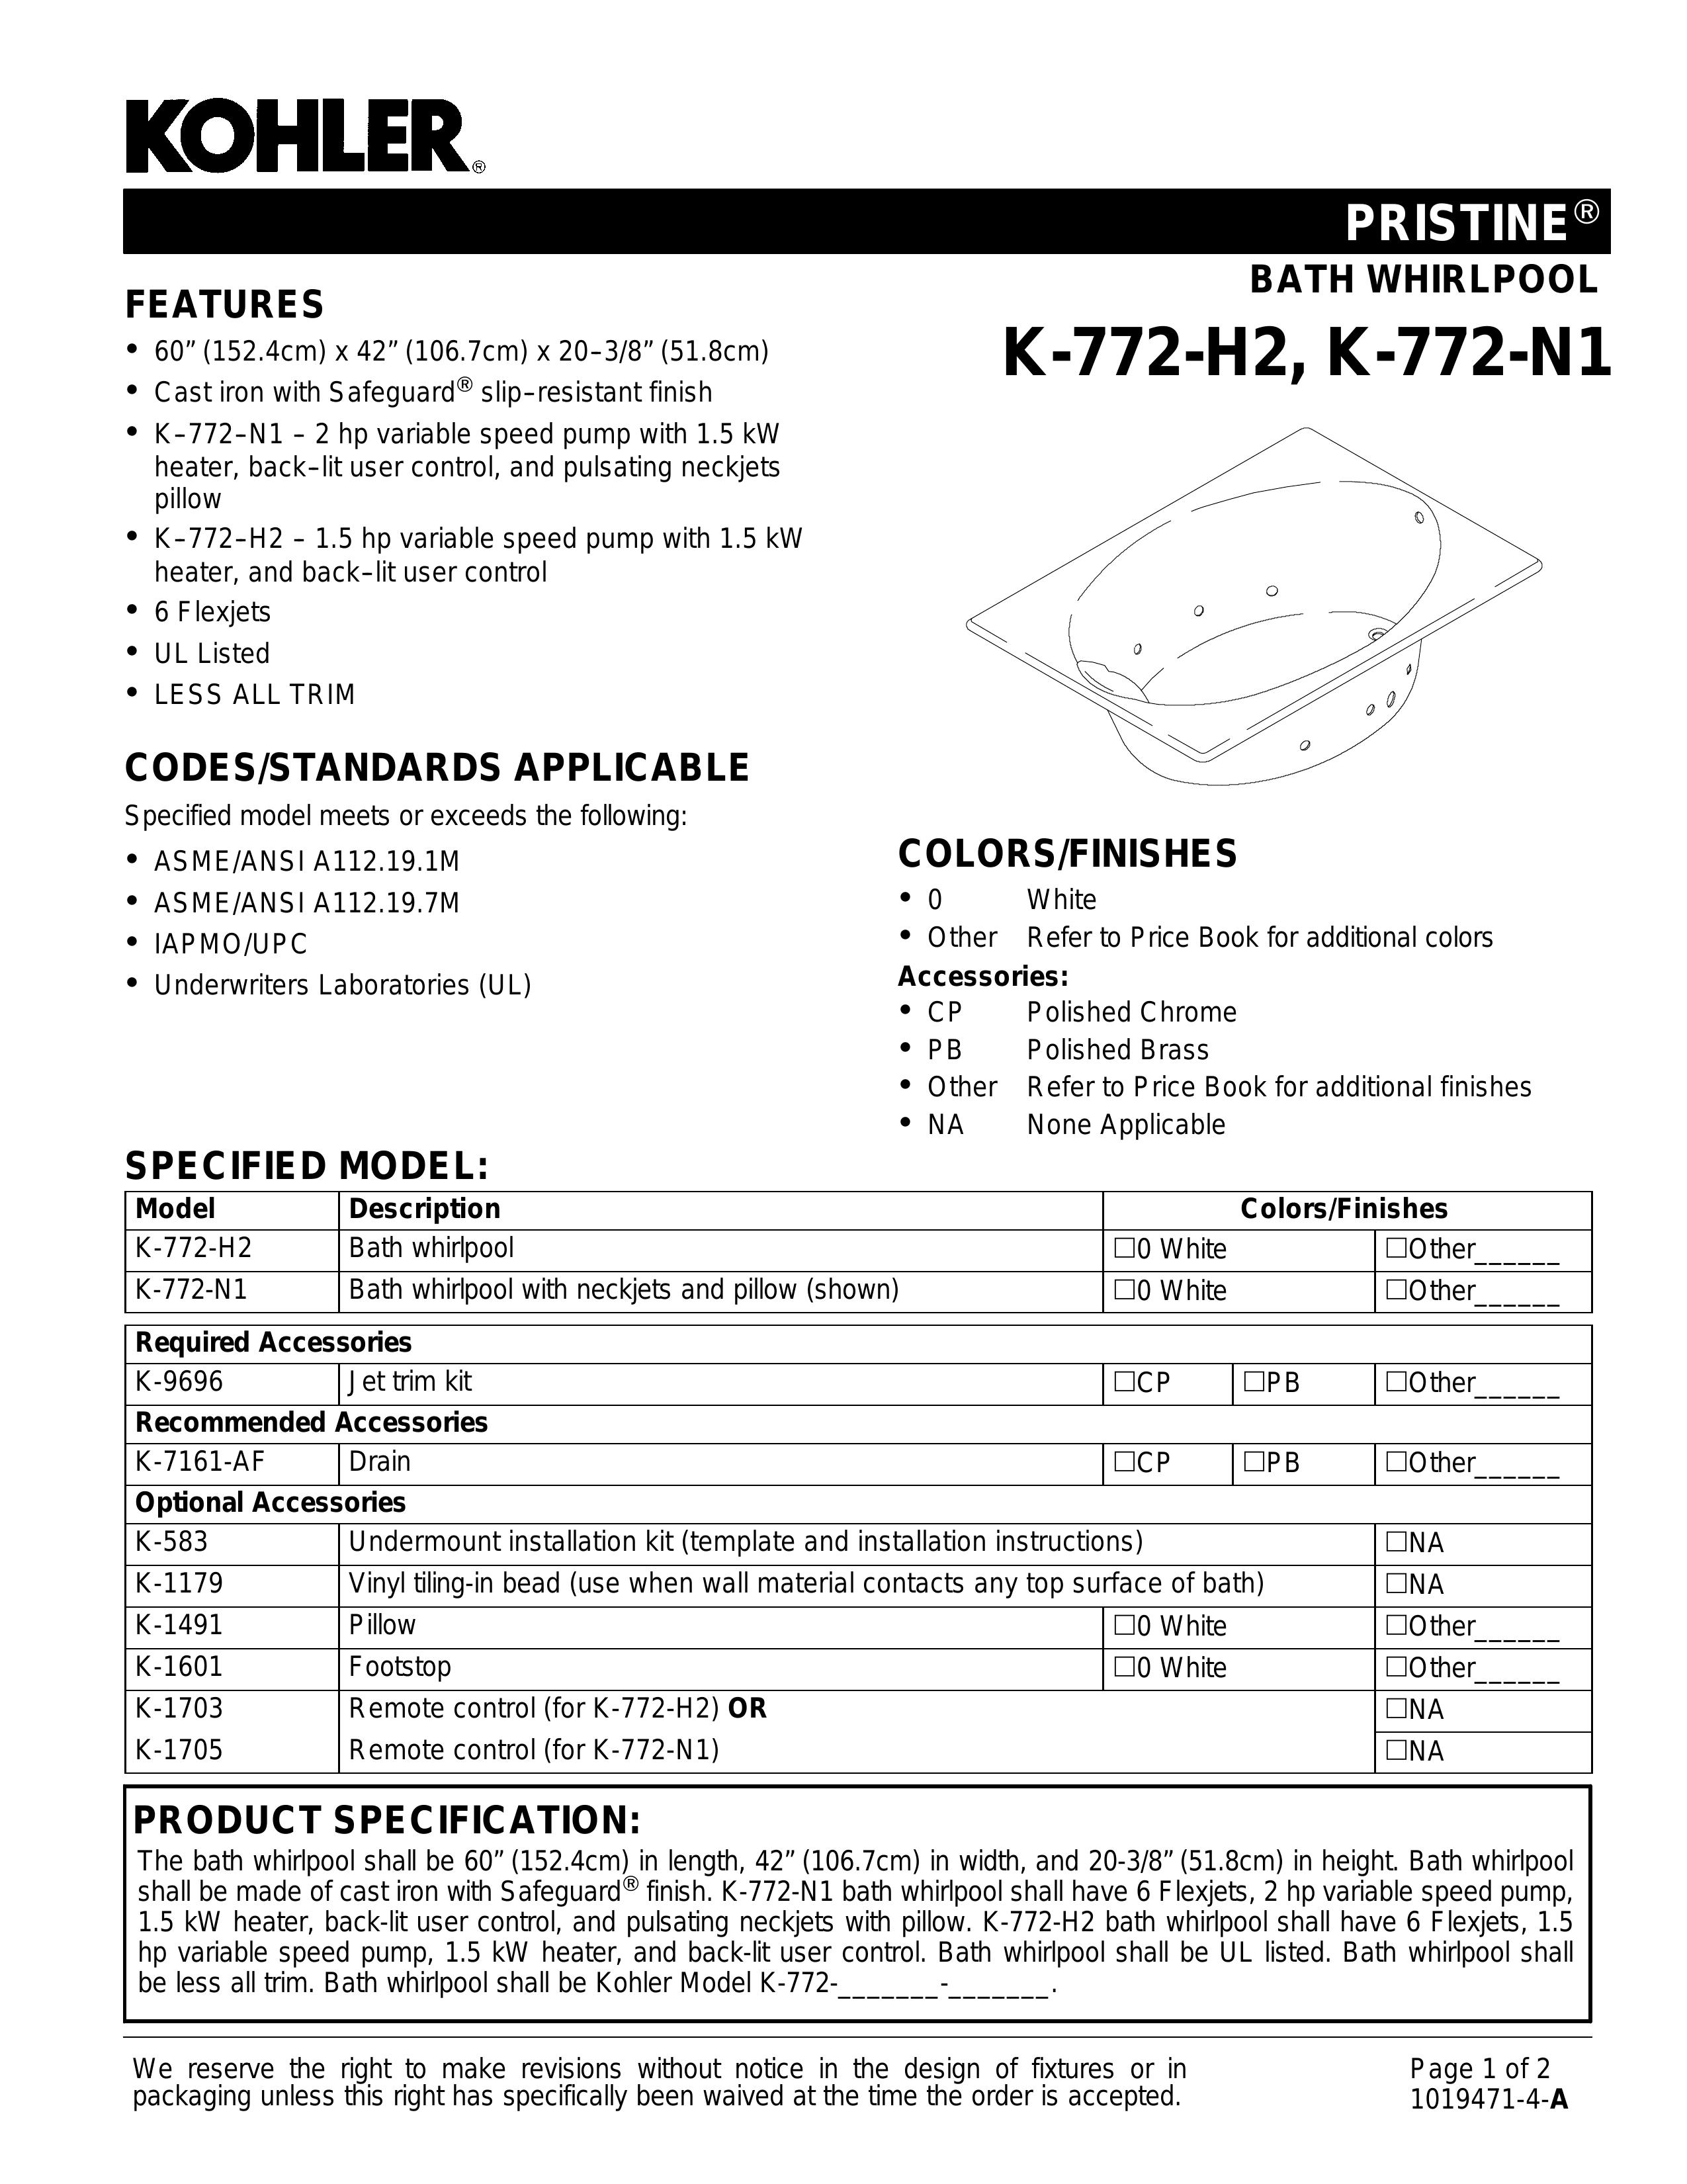 Kohler K-772-H2 Hot Tub User Manual